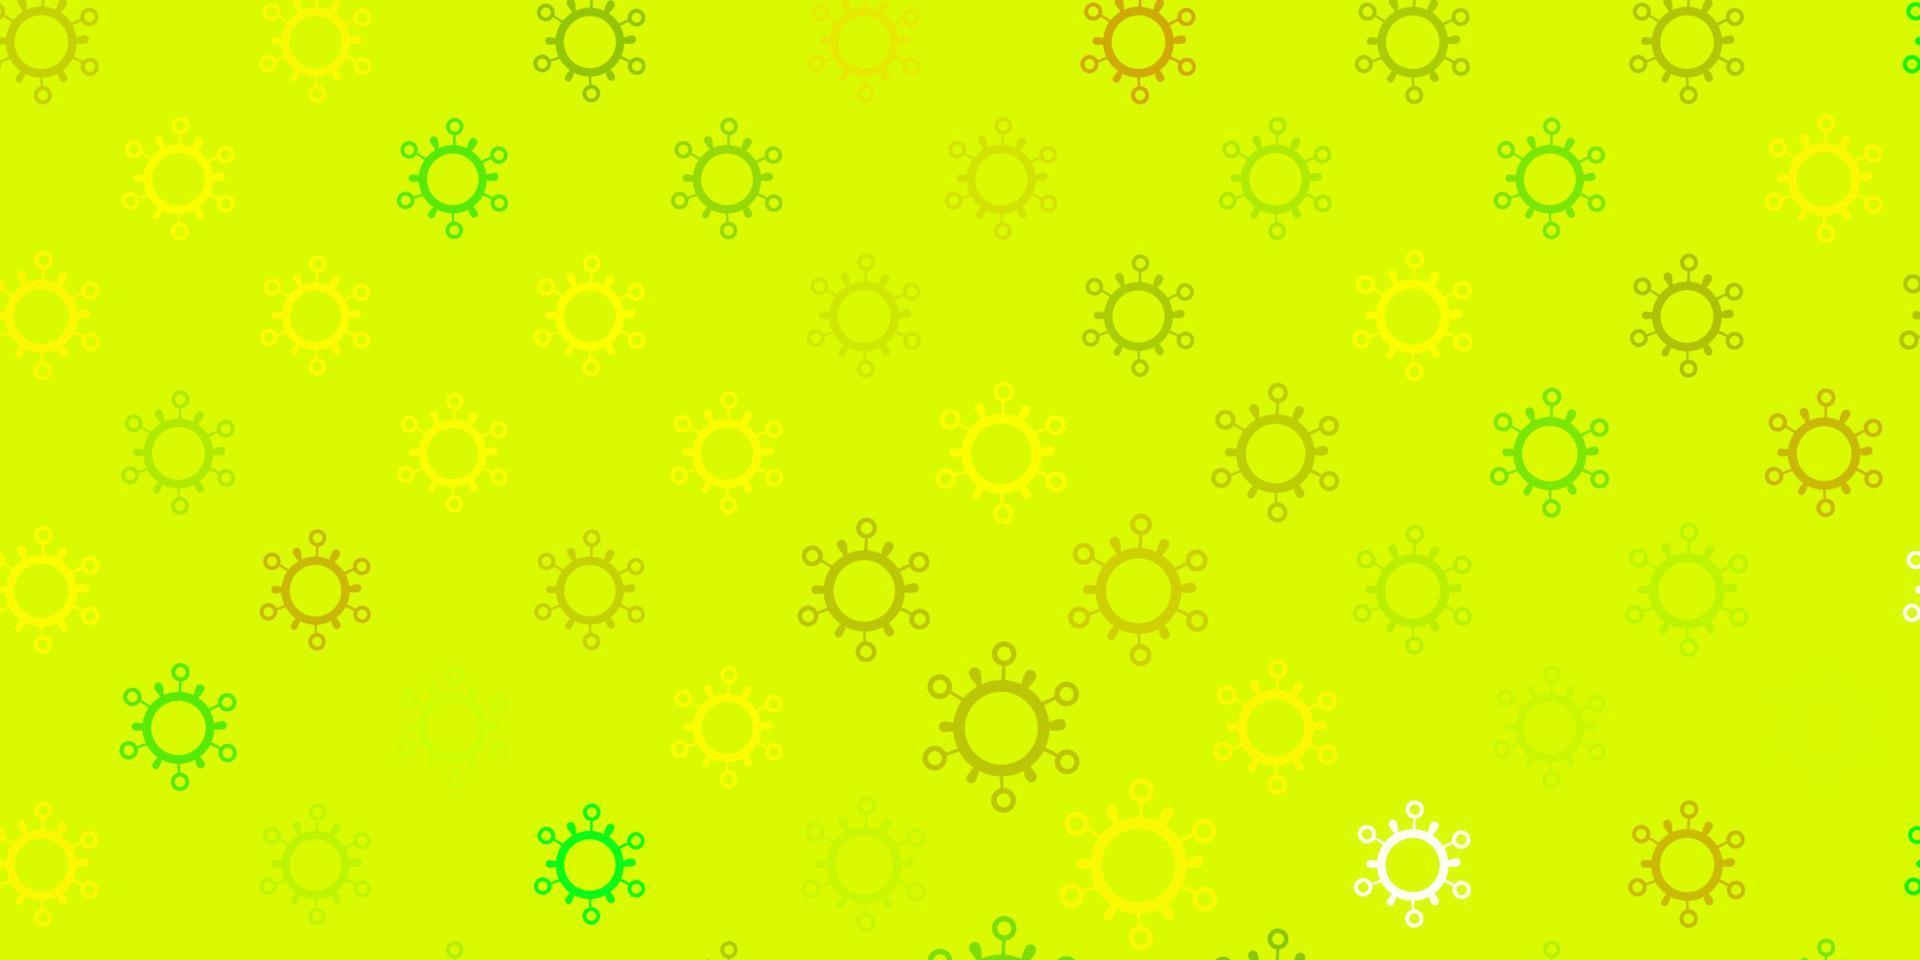 modello vettoriale verde chiaro, giallo con segni di influenza.